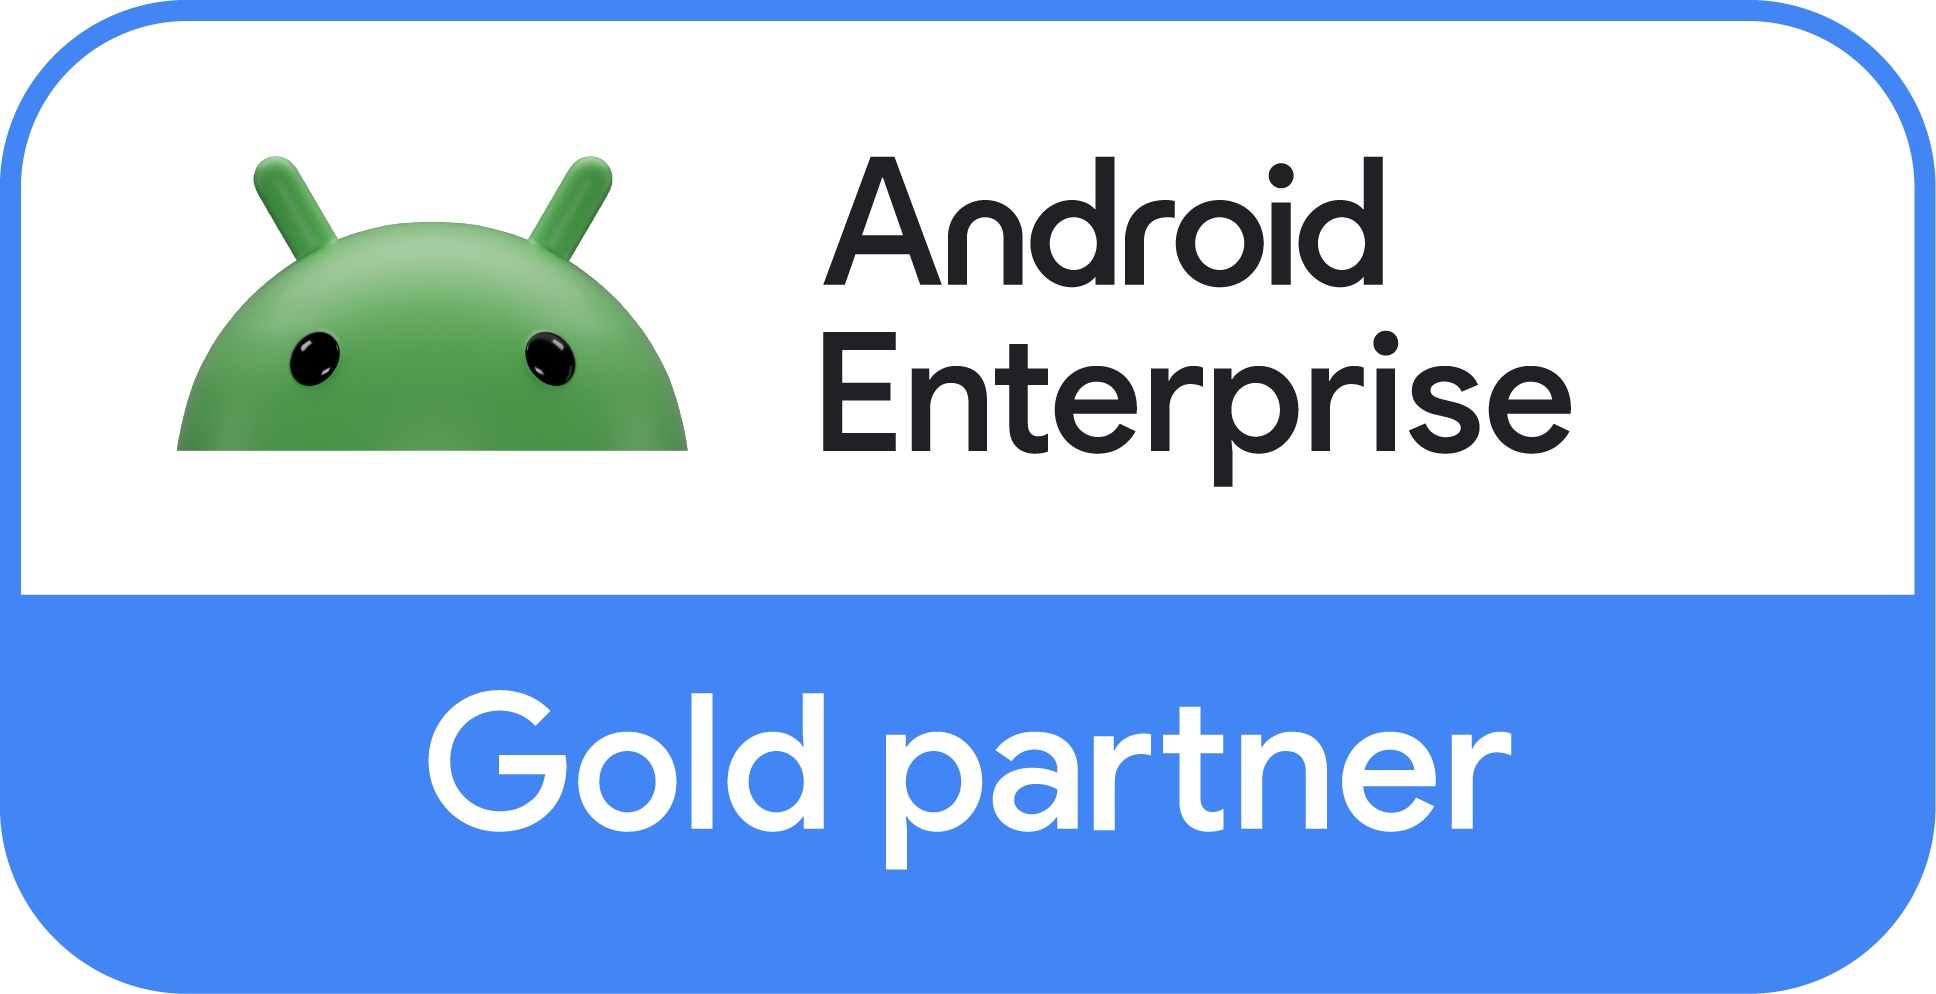 b_news_AndroidEnterprise_GoldPartner